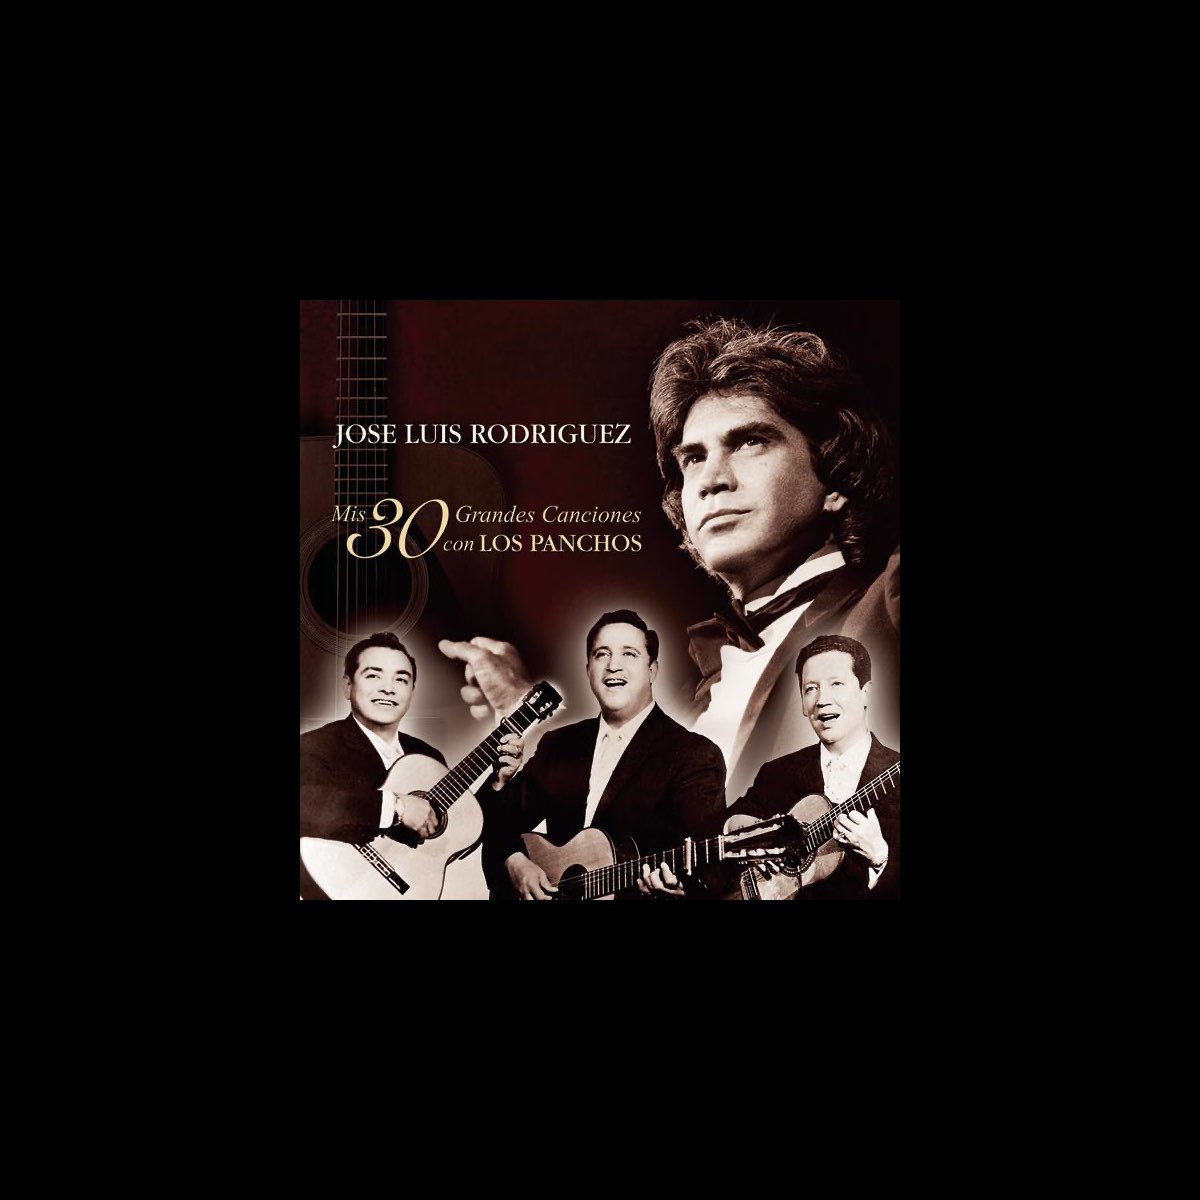 José Luis Rodríguez: Mis 30 Mejores Canciones Con los Panchos - Album by  José Luis Rodríguez - Apple Music